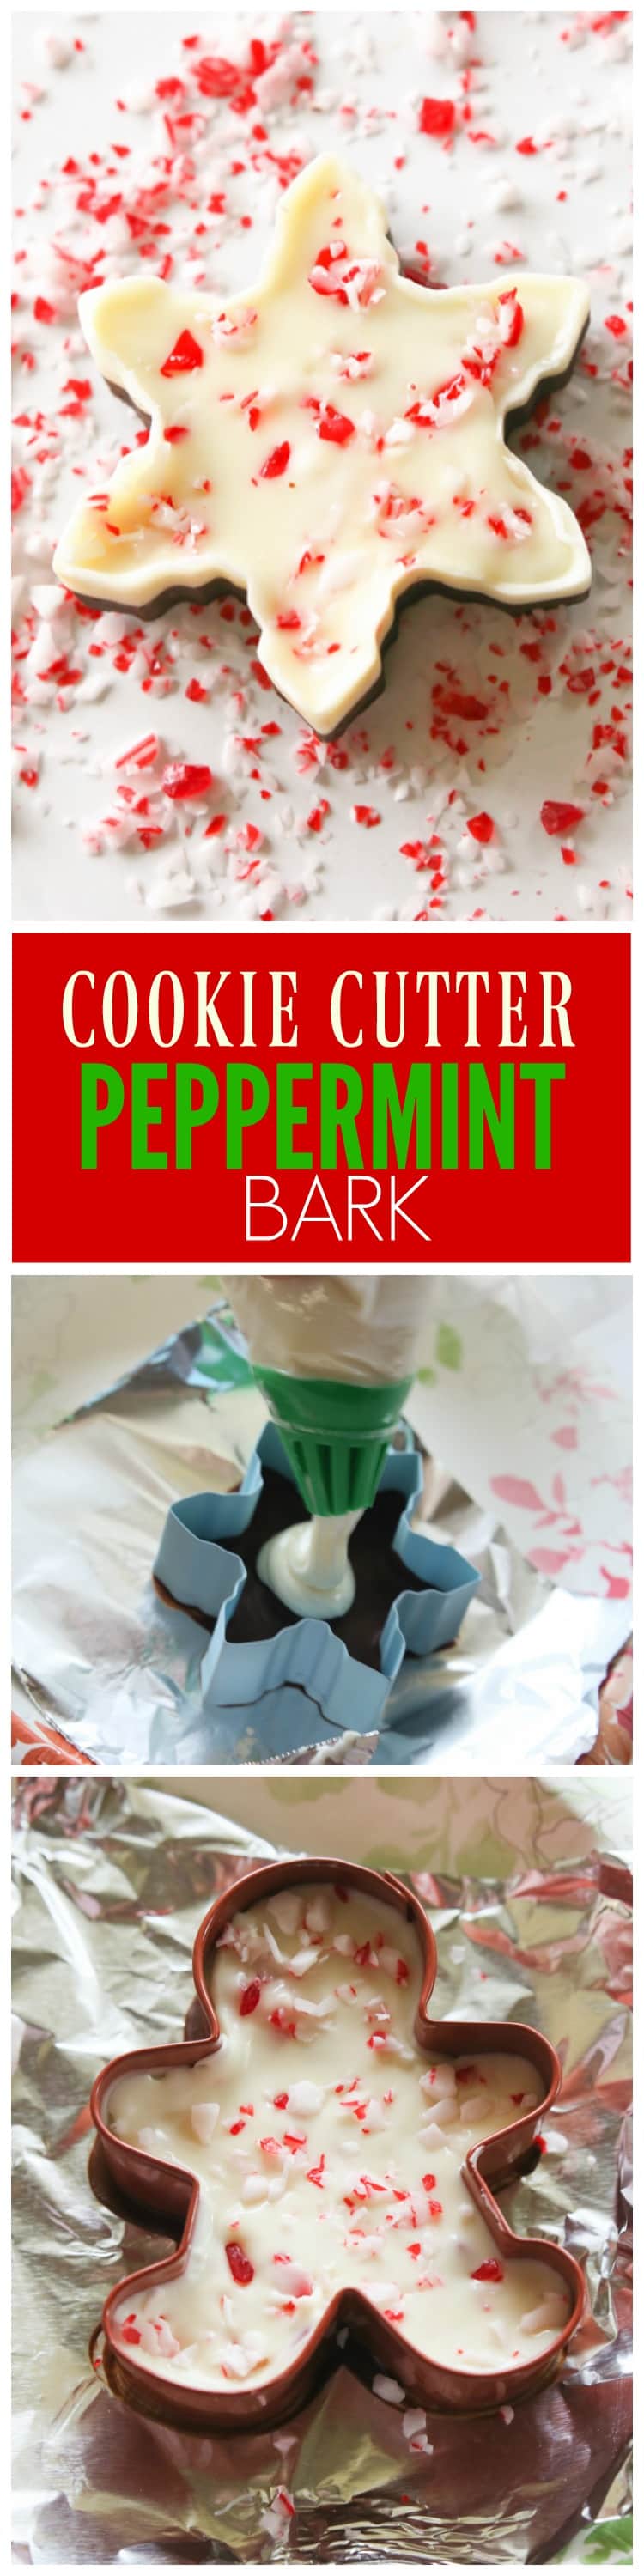 Cookie Cutter Peppermint Bark 